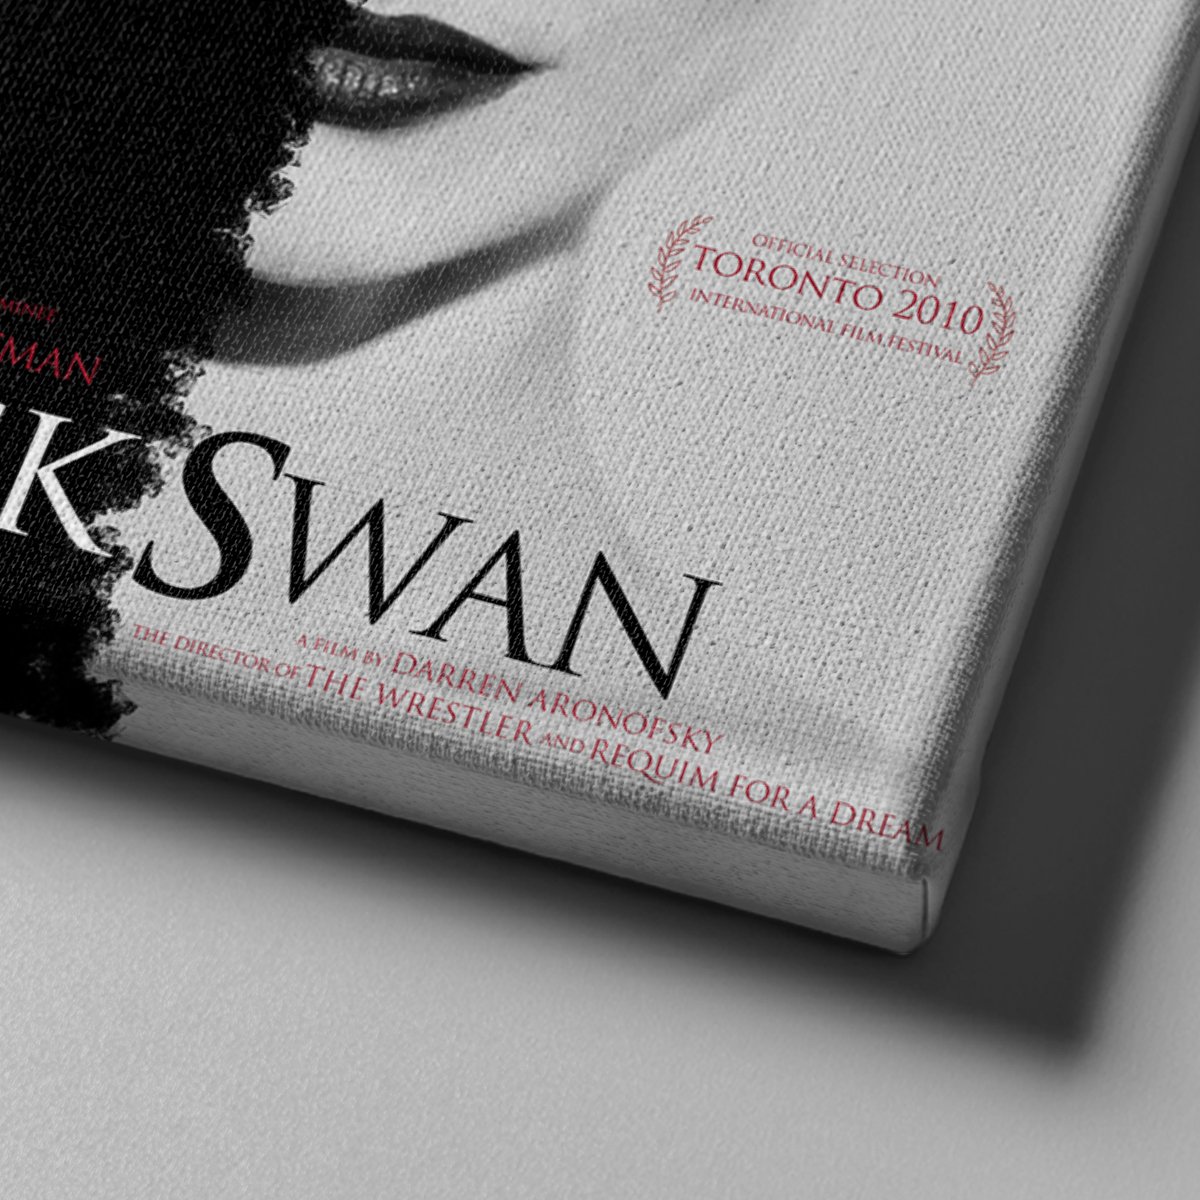 Market701 | Black Swan Film Afişi 2 Kanvas Tablo - 